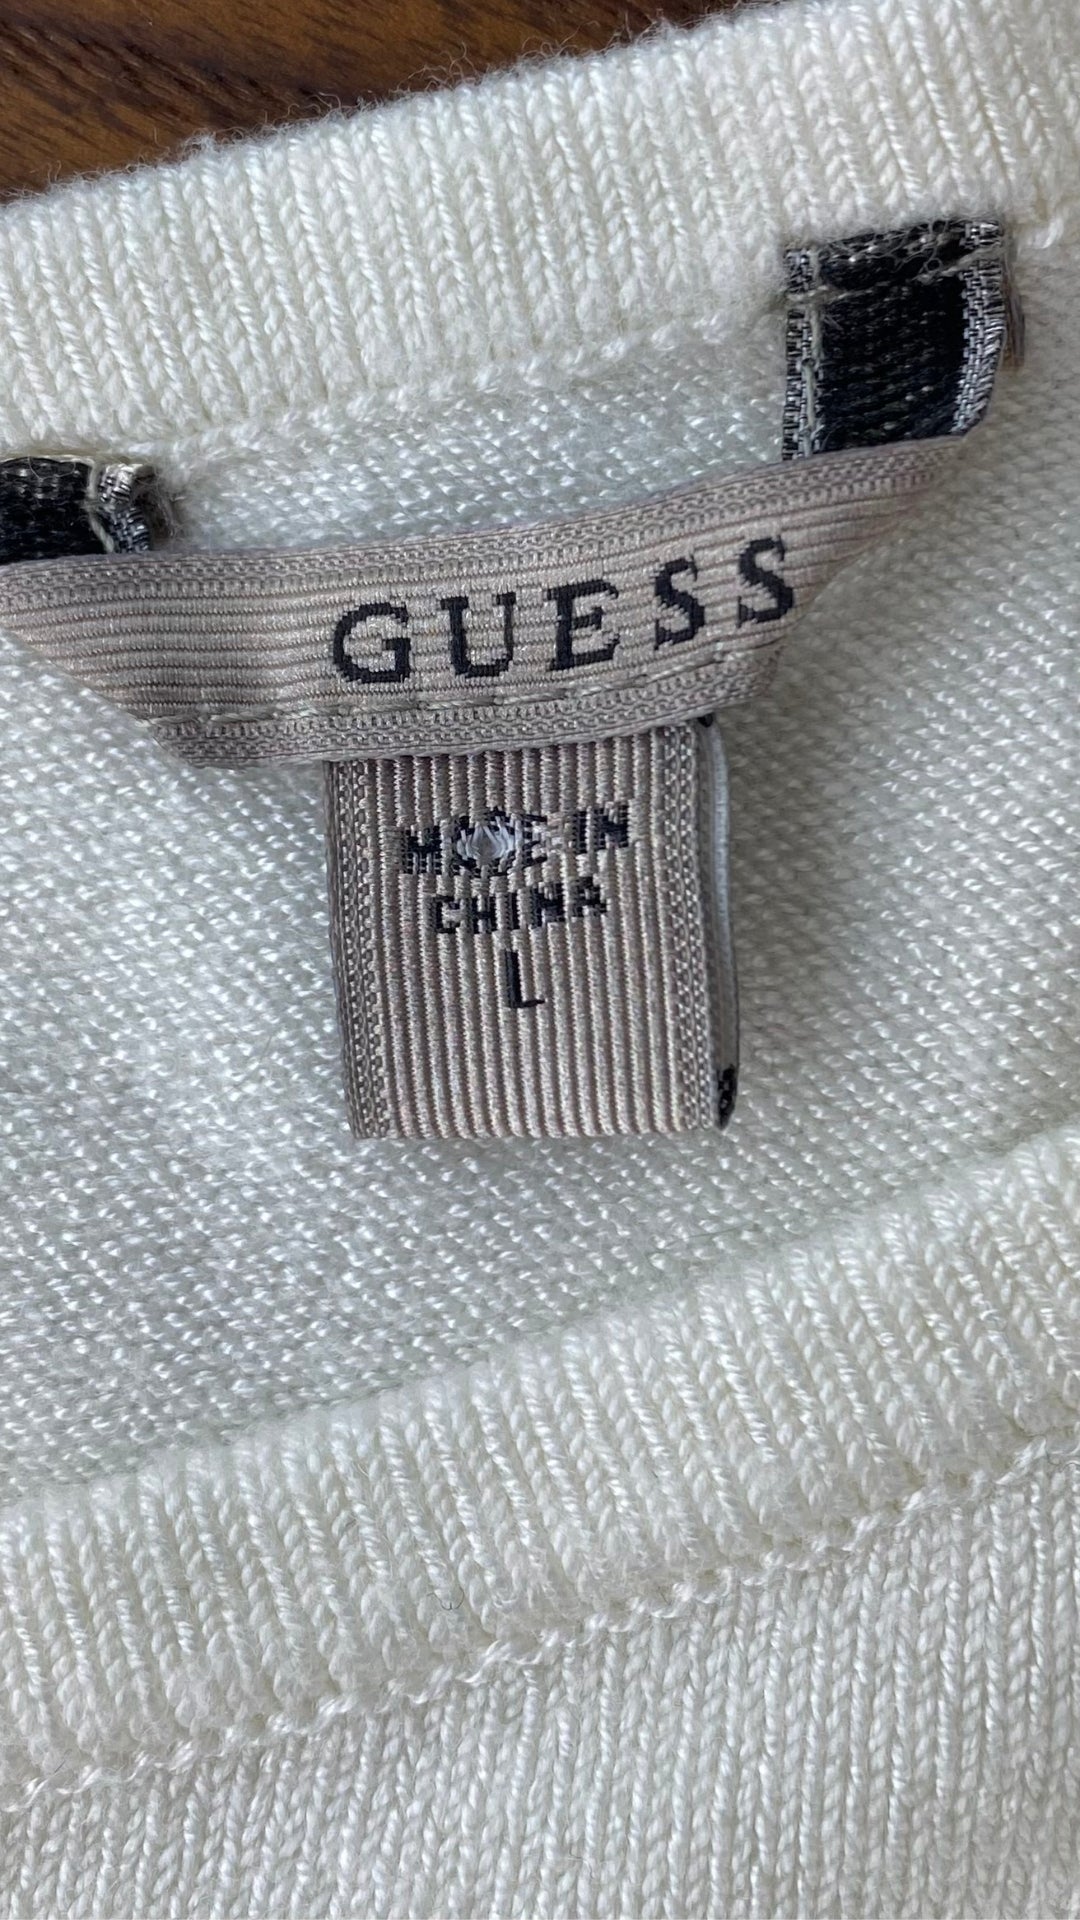 Chandail crème en tricot Guess à une manche. Vue de l'étiquette de marque et taille.